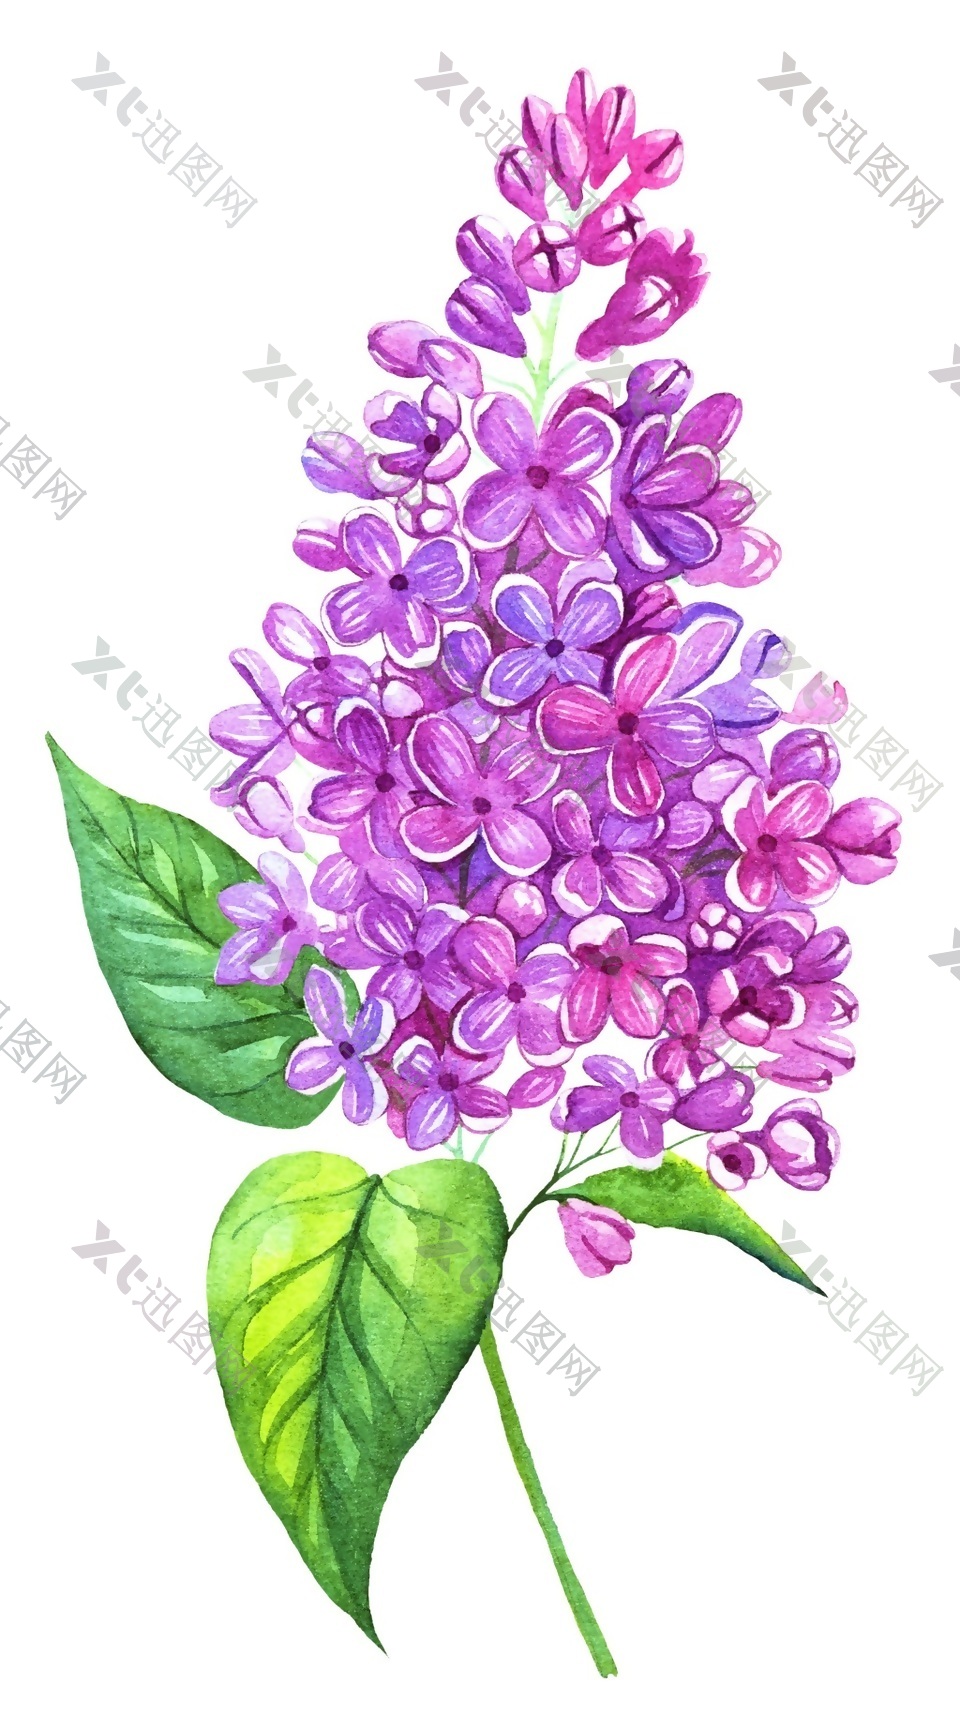 魅力紫花矢量素材